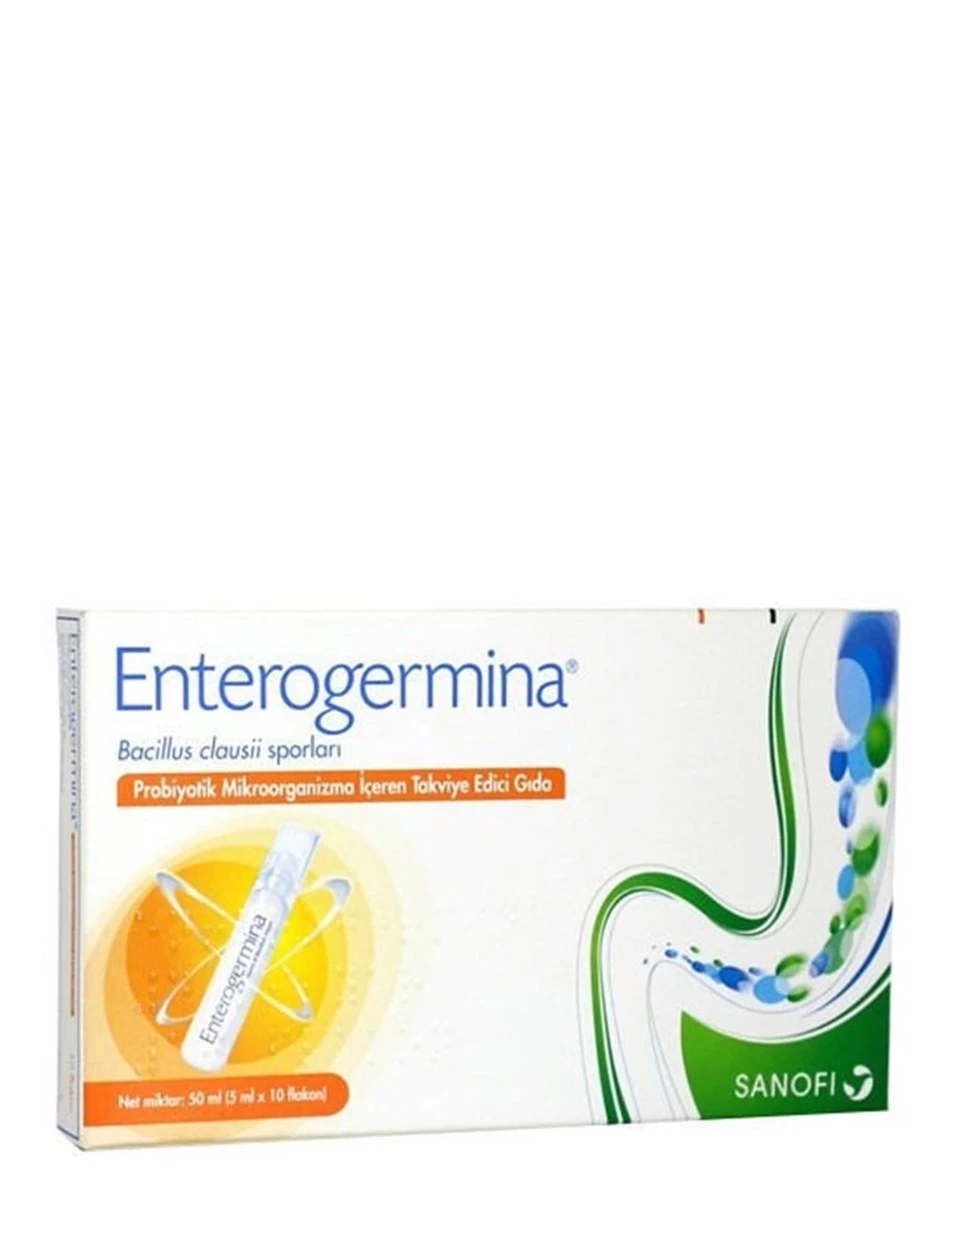 Enterogermina Takviye Edici Gıda 100 ml - 5 ml x 20 Flakon